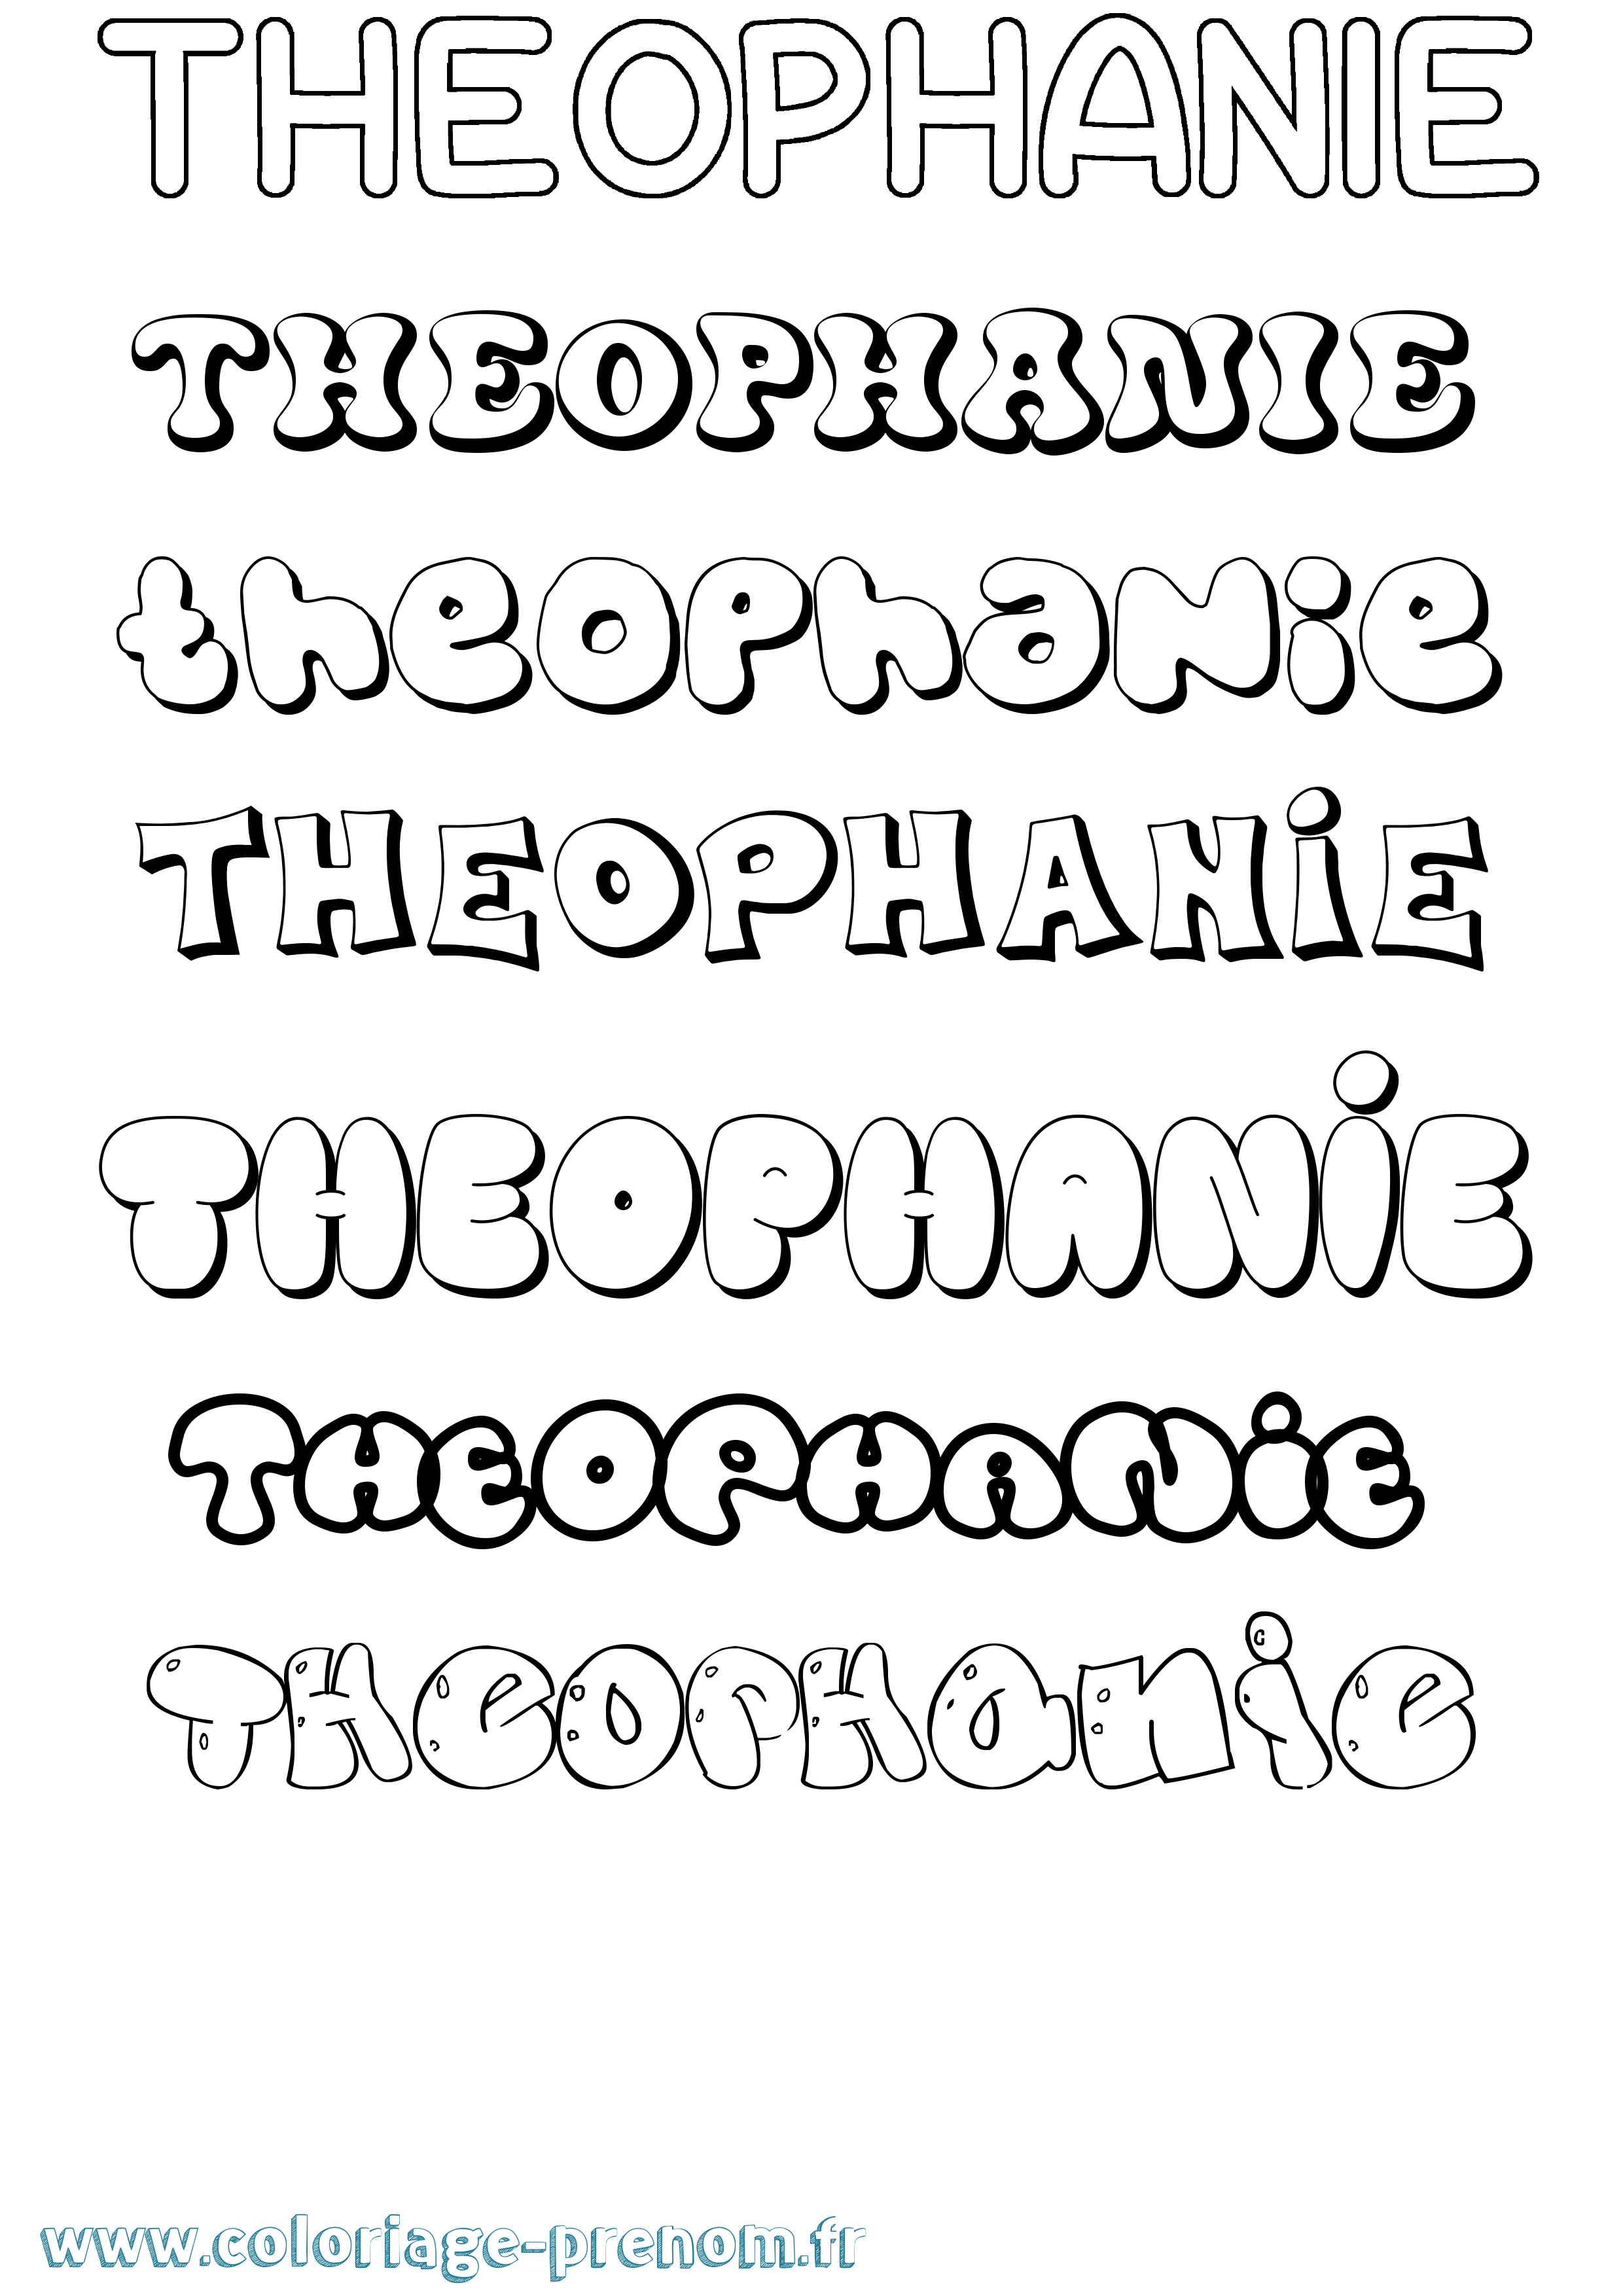 Coloriage prénom Theophanie Bubble